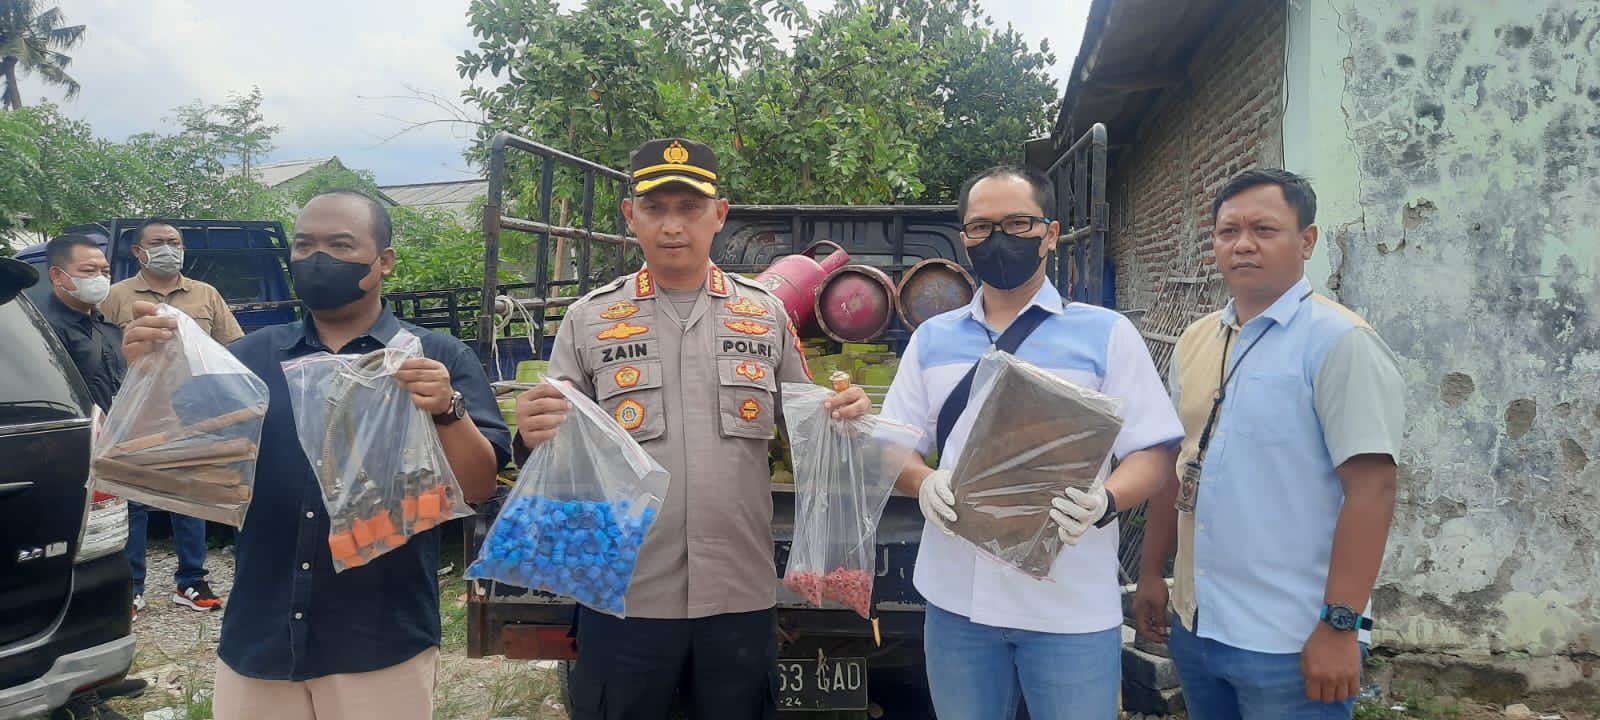 4 Bulan Beroperasi Raup Untung Rp 200 Juta, Pelaku Pengoplos Elpiji Ditangkap di Tangerang